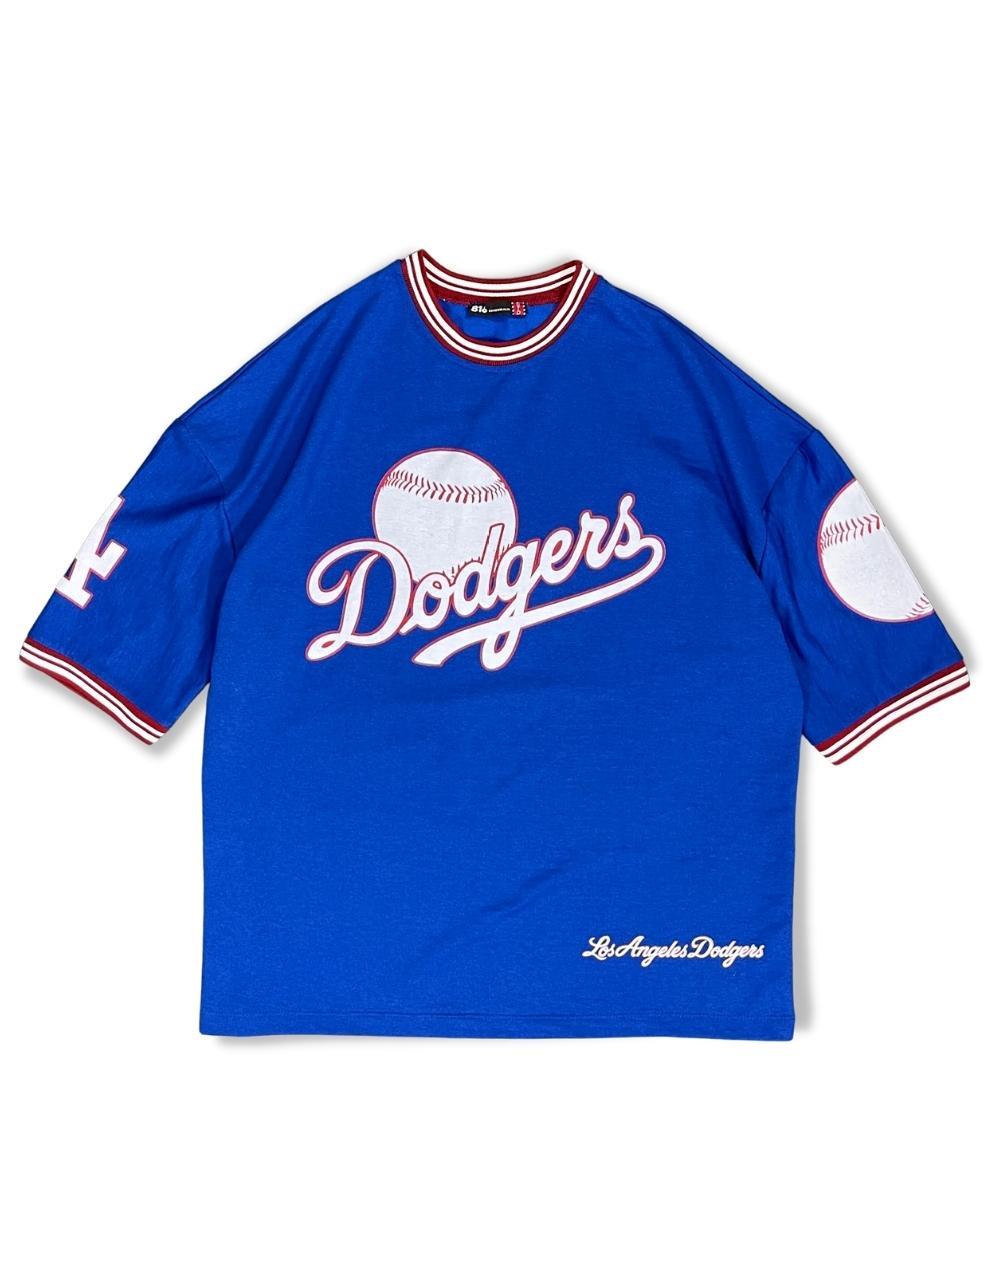 Dodgers Oversized Standard Unisex BlueT-Shirt - STREET MODE ™